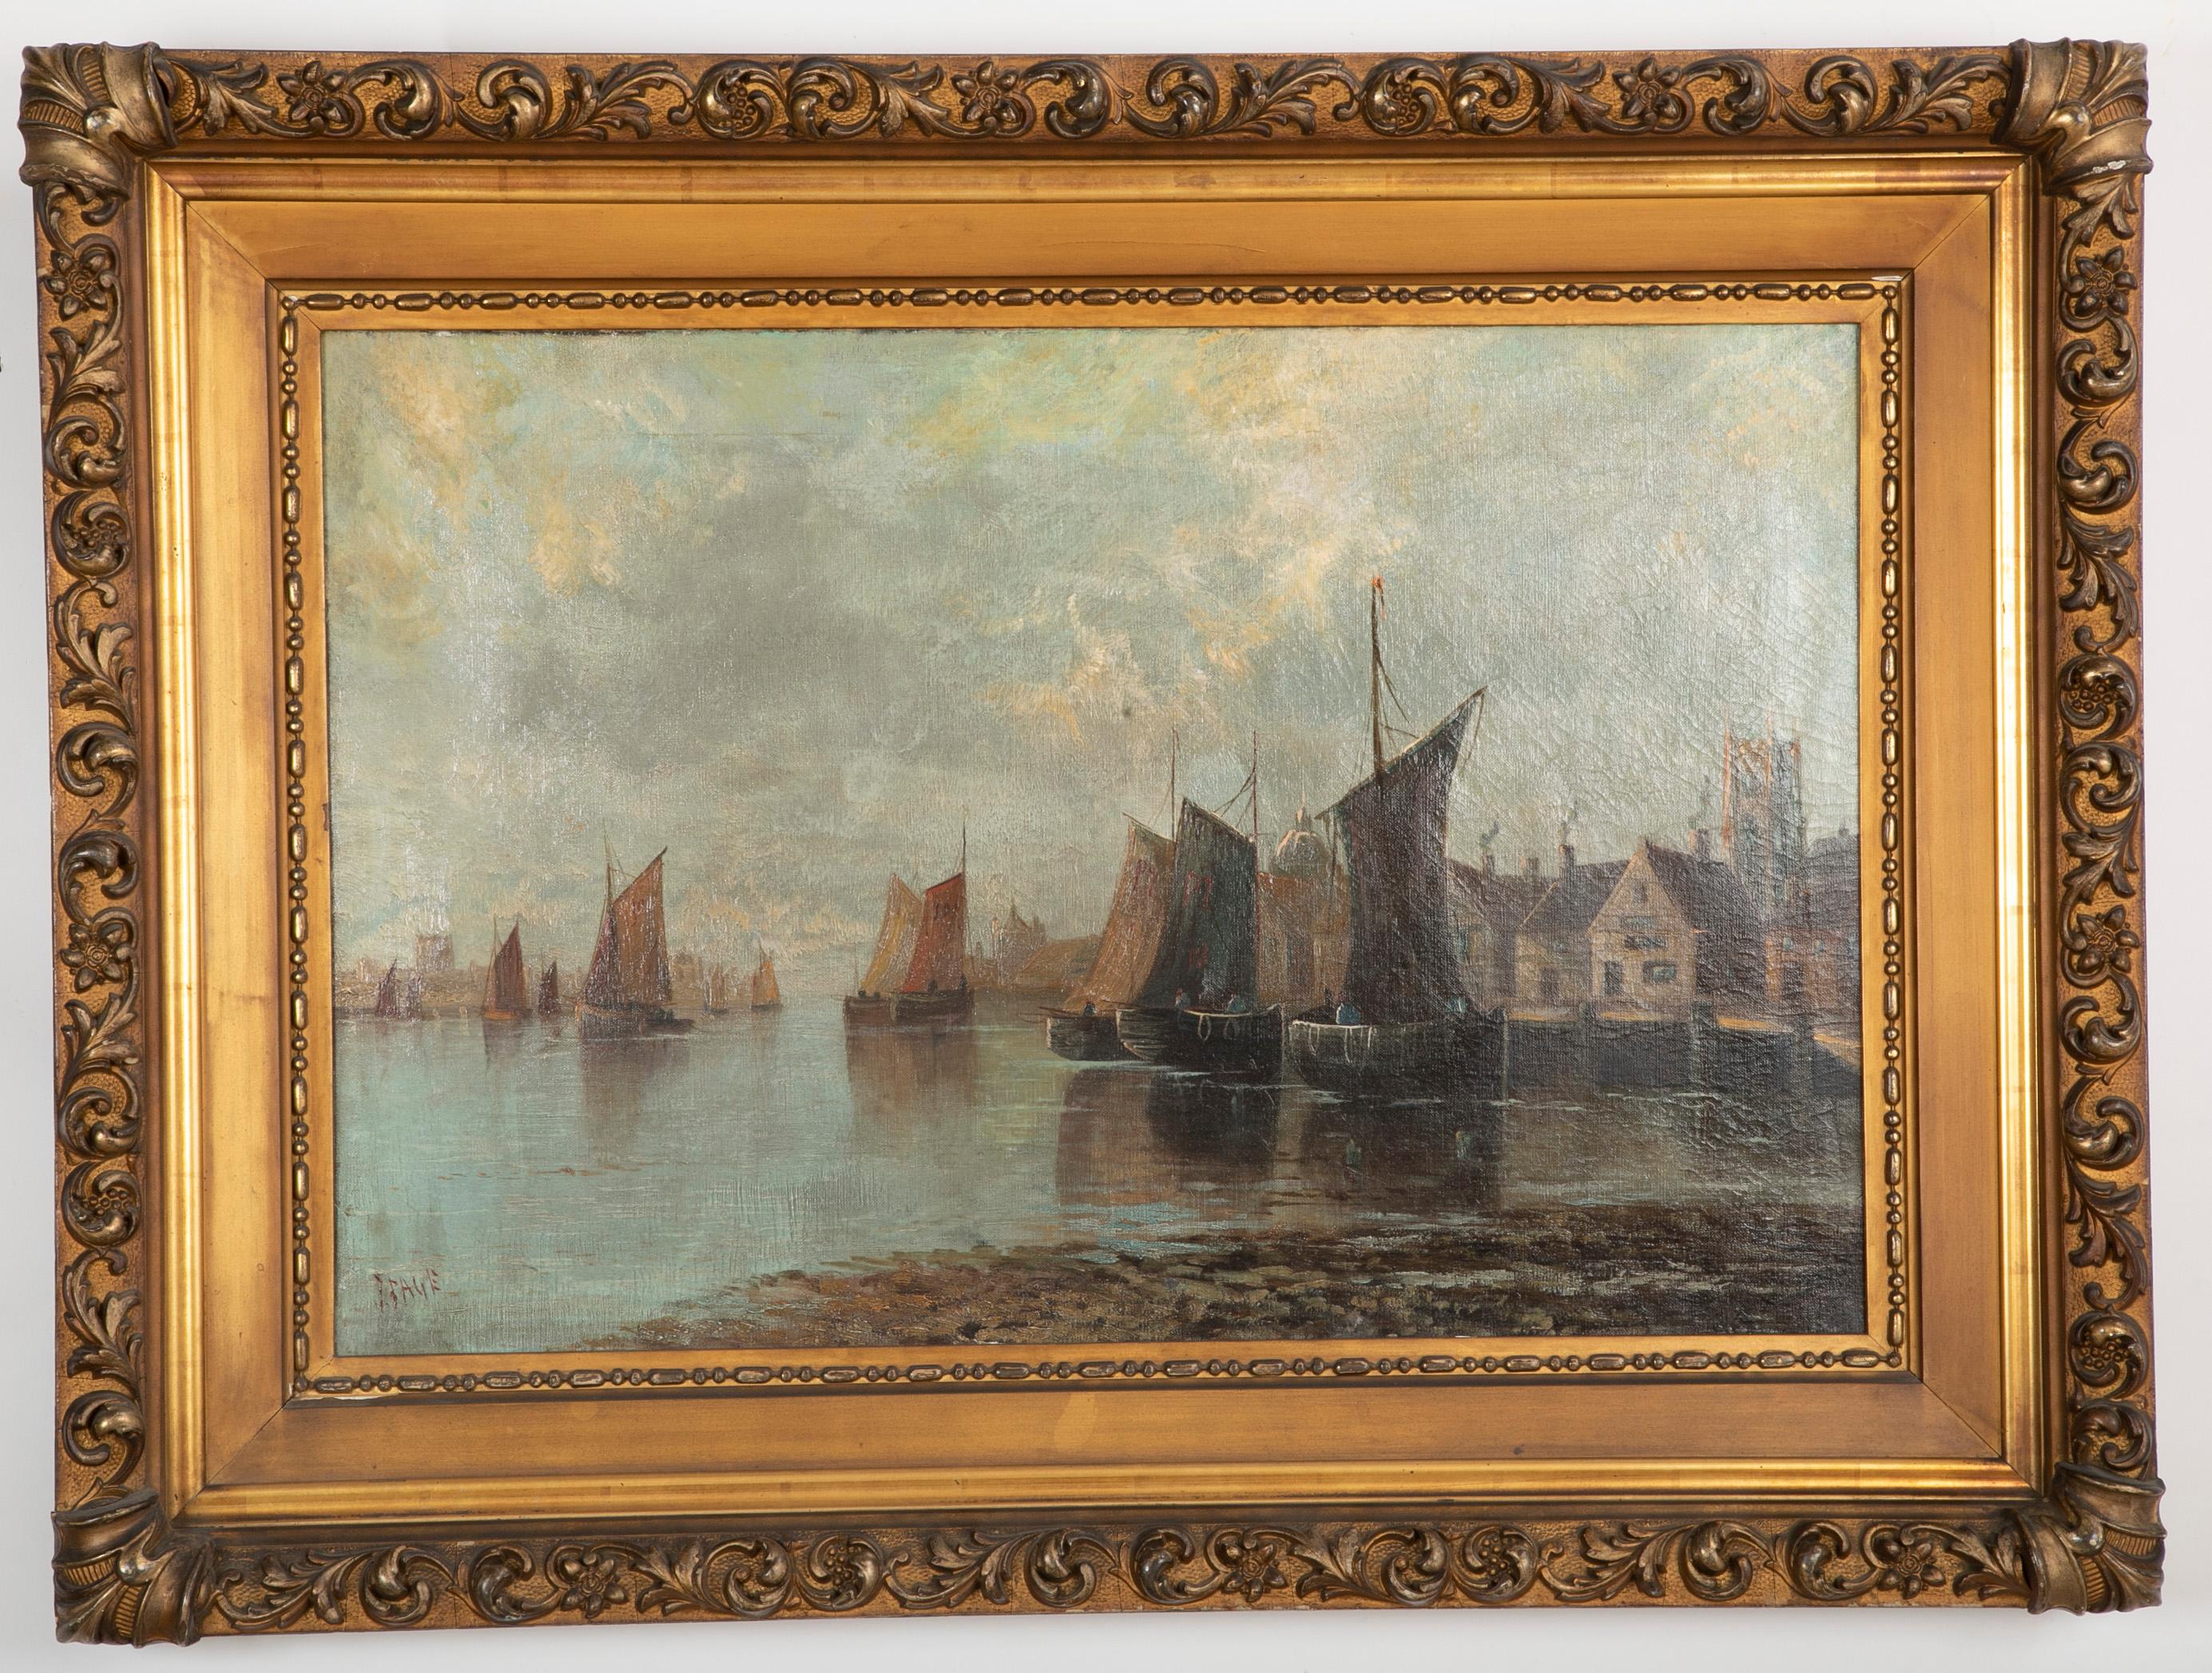 Une huile sur toile de scène portuaire par J. Bage.